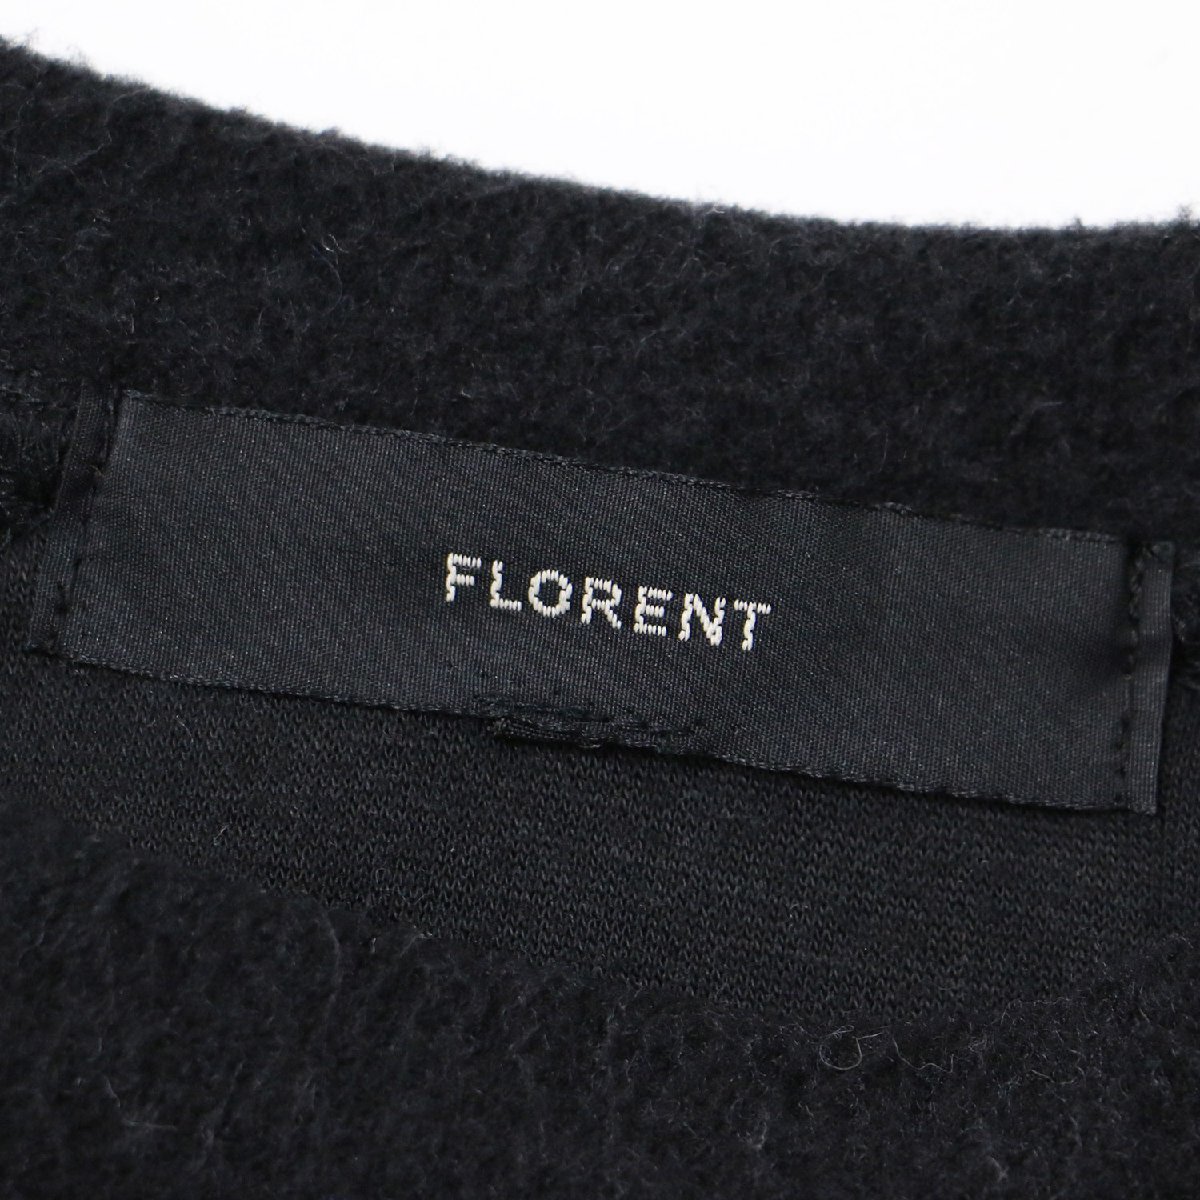 FLORENT Florent флис черный чёрный 1(M) tops тянуть over вырез лодочкой длинный рукав объем рукав 22 год осень-зима сделано в Японии 